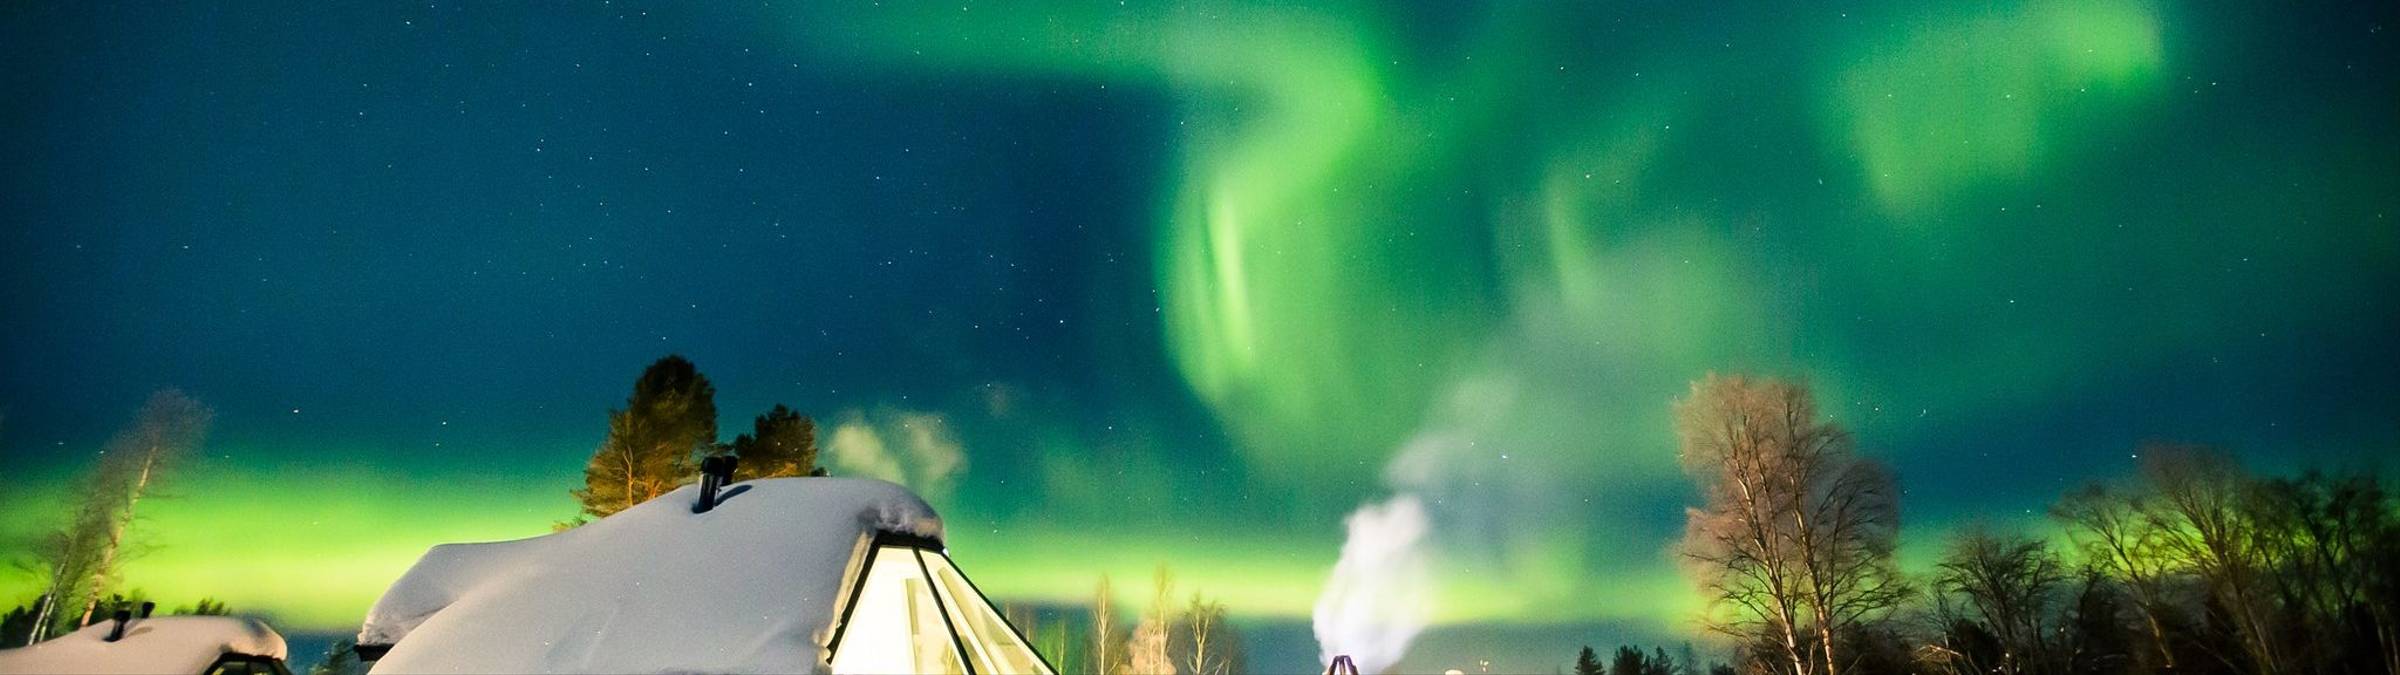 Aurora Cabin glass igloo in Apukka Resort Rovaniemi Lapland Finland.jpg